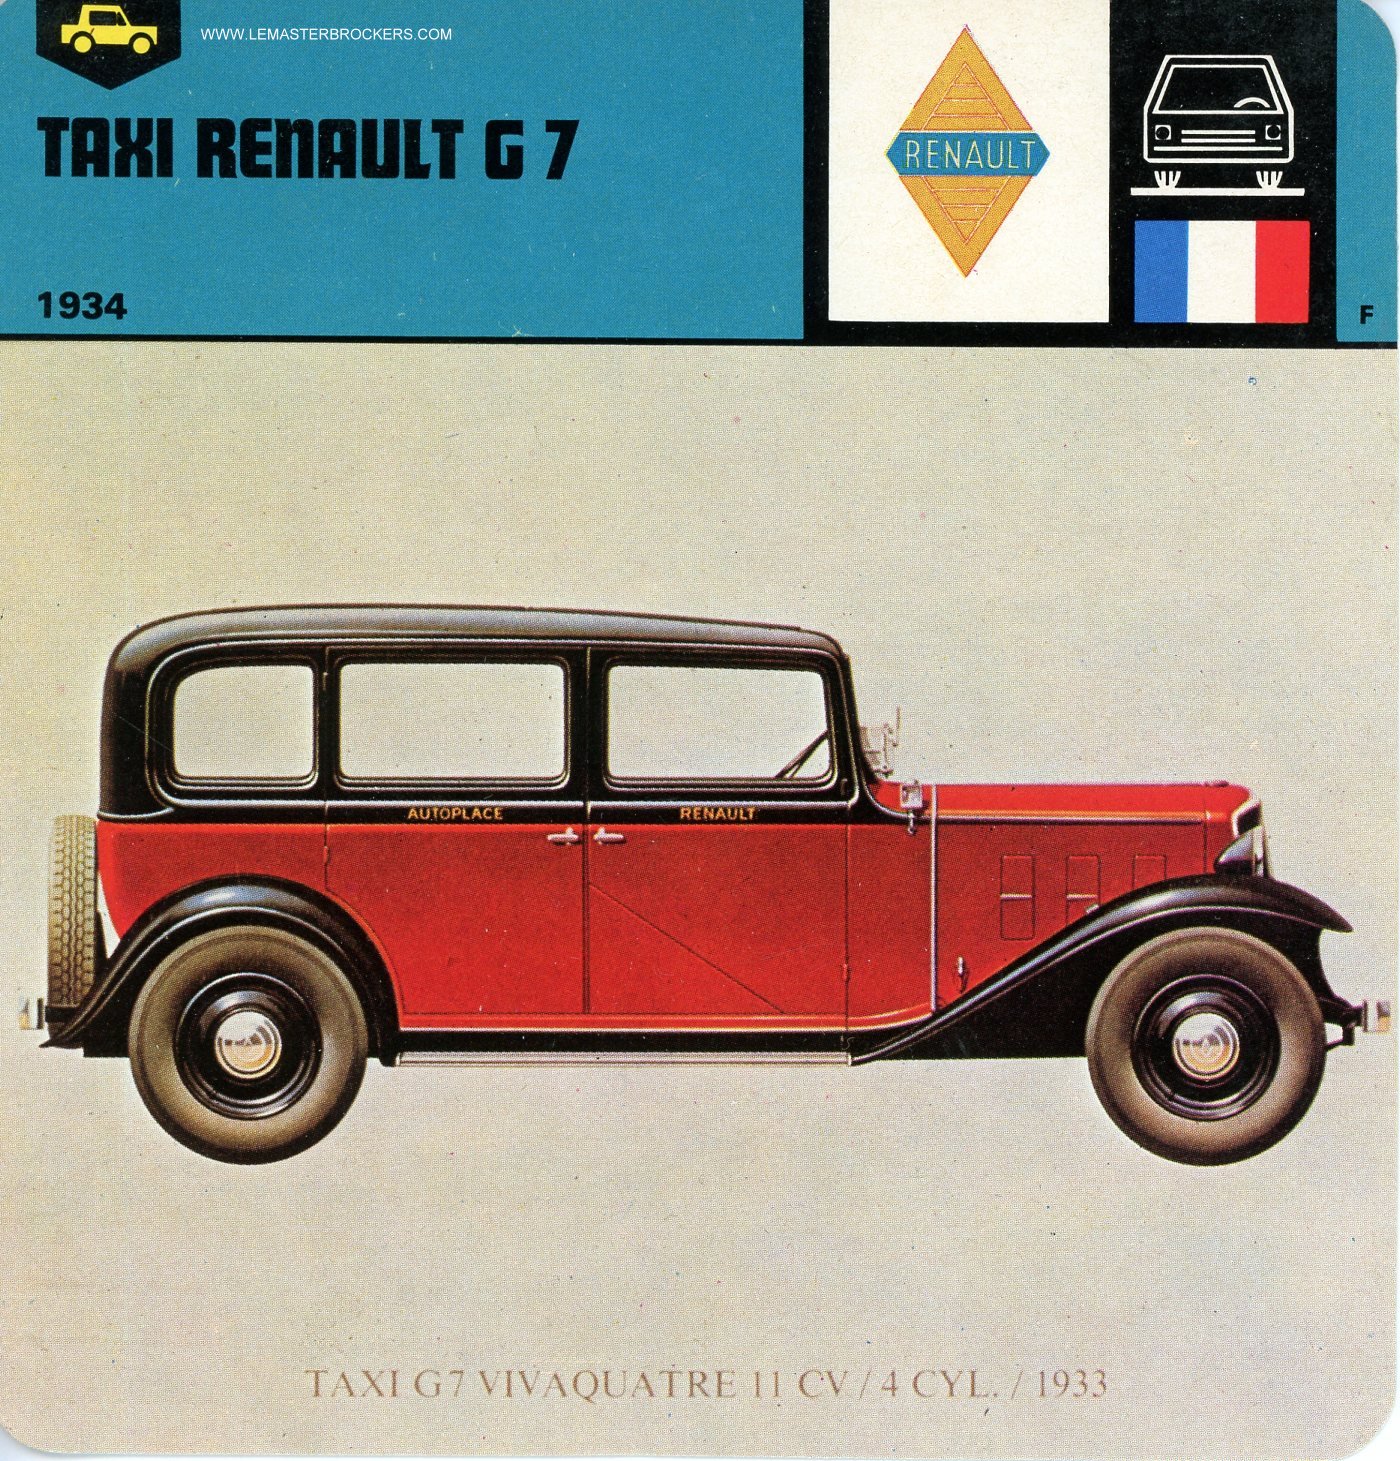 FICHE AUTO RENAULT G7 TAXI 1934 (RENAULT KZ11)